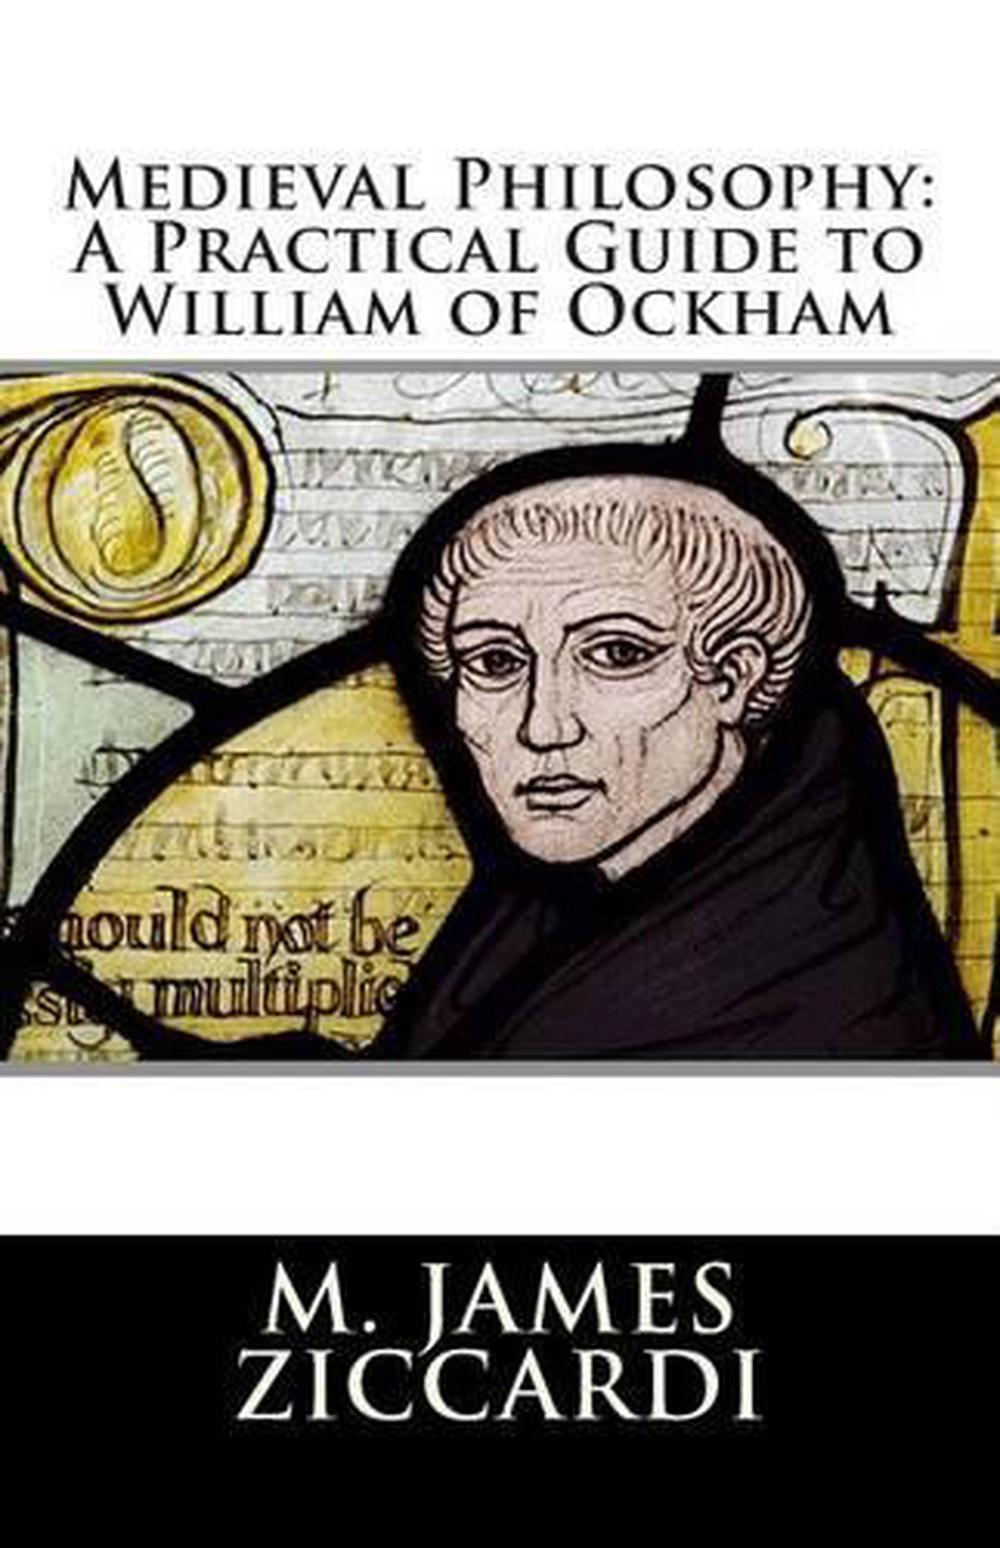 philosopher william of ockham